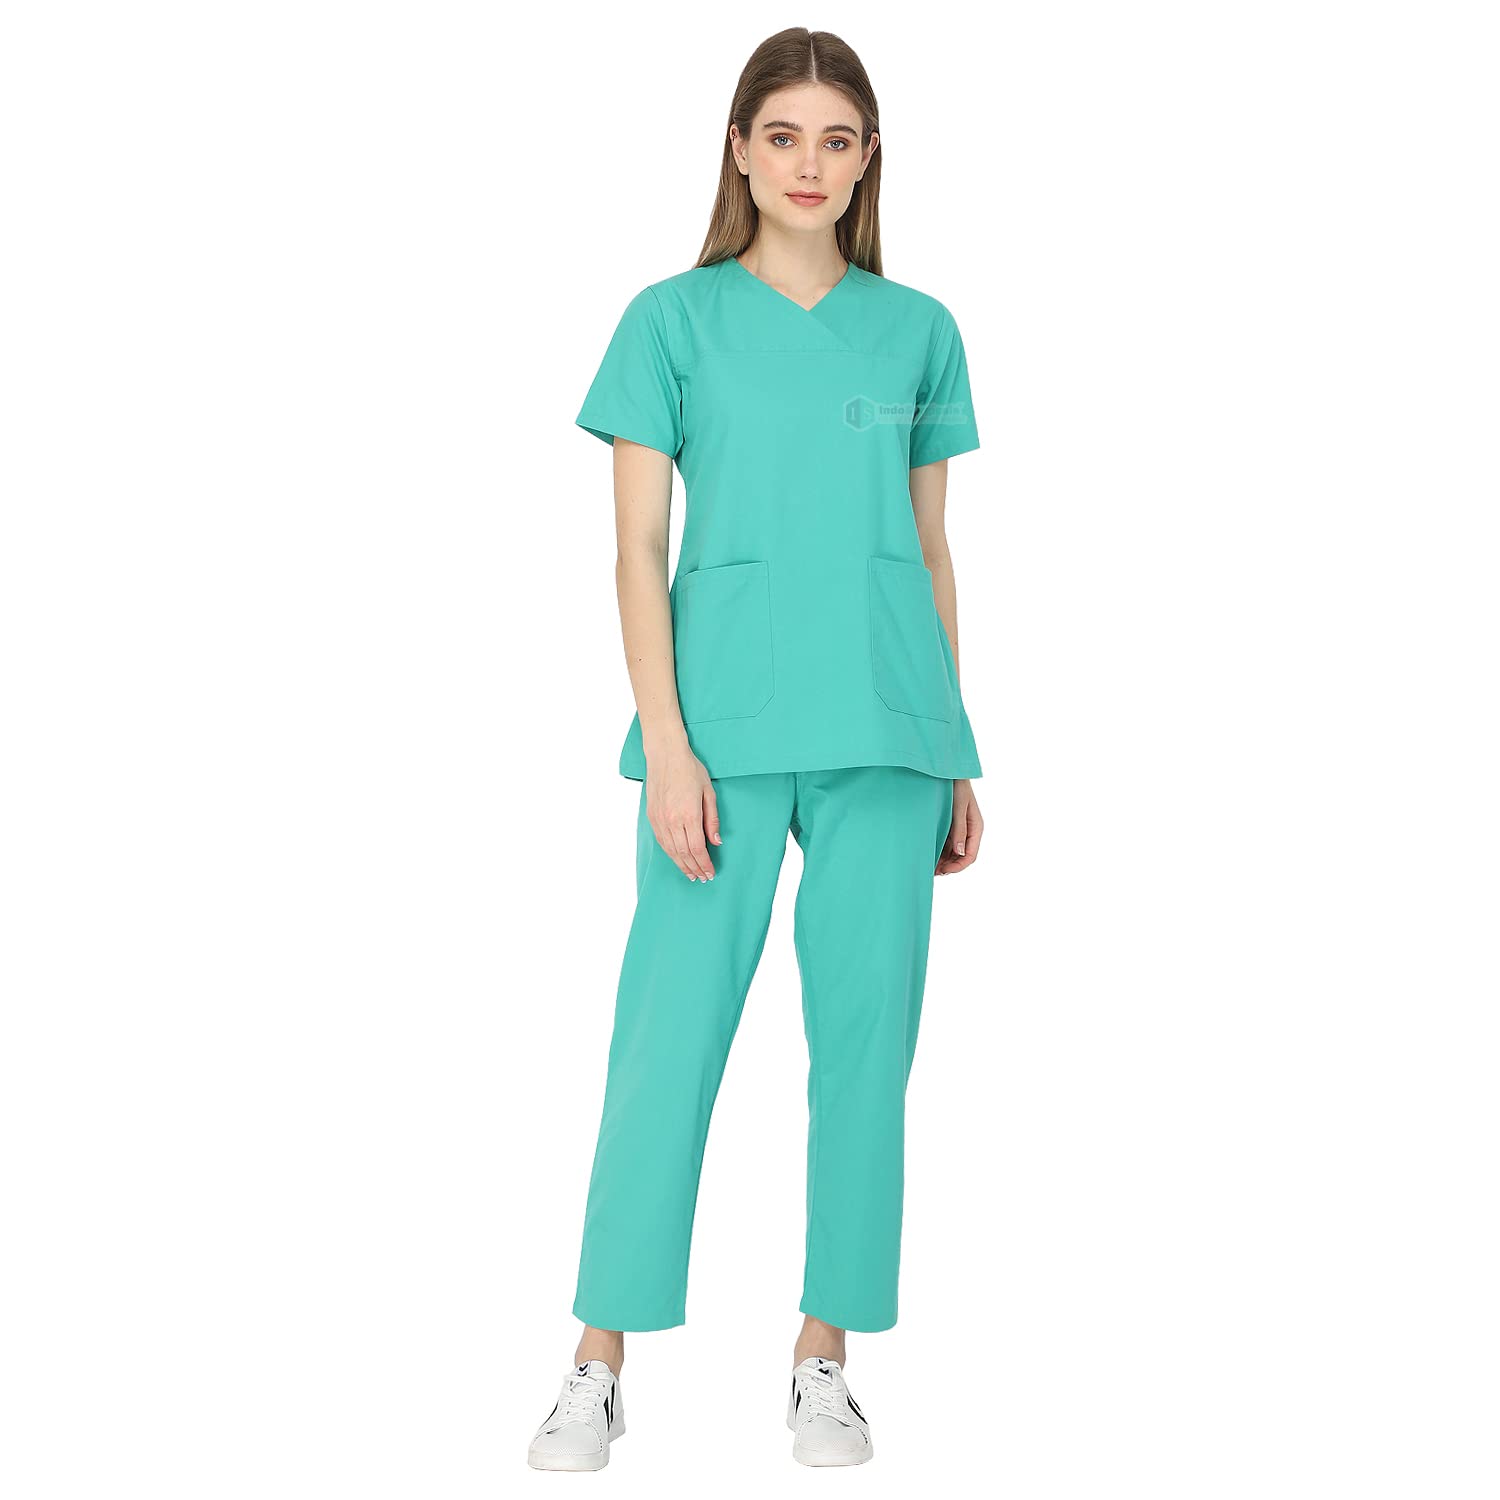 premium scrub suit for female doctor